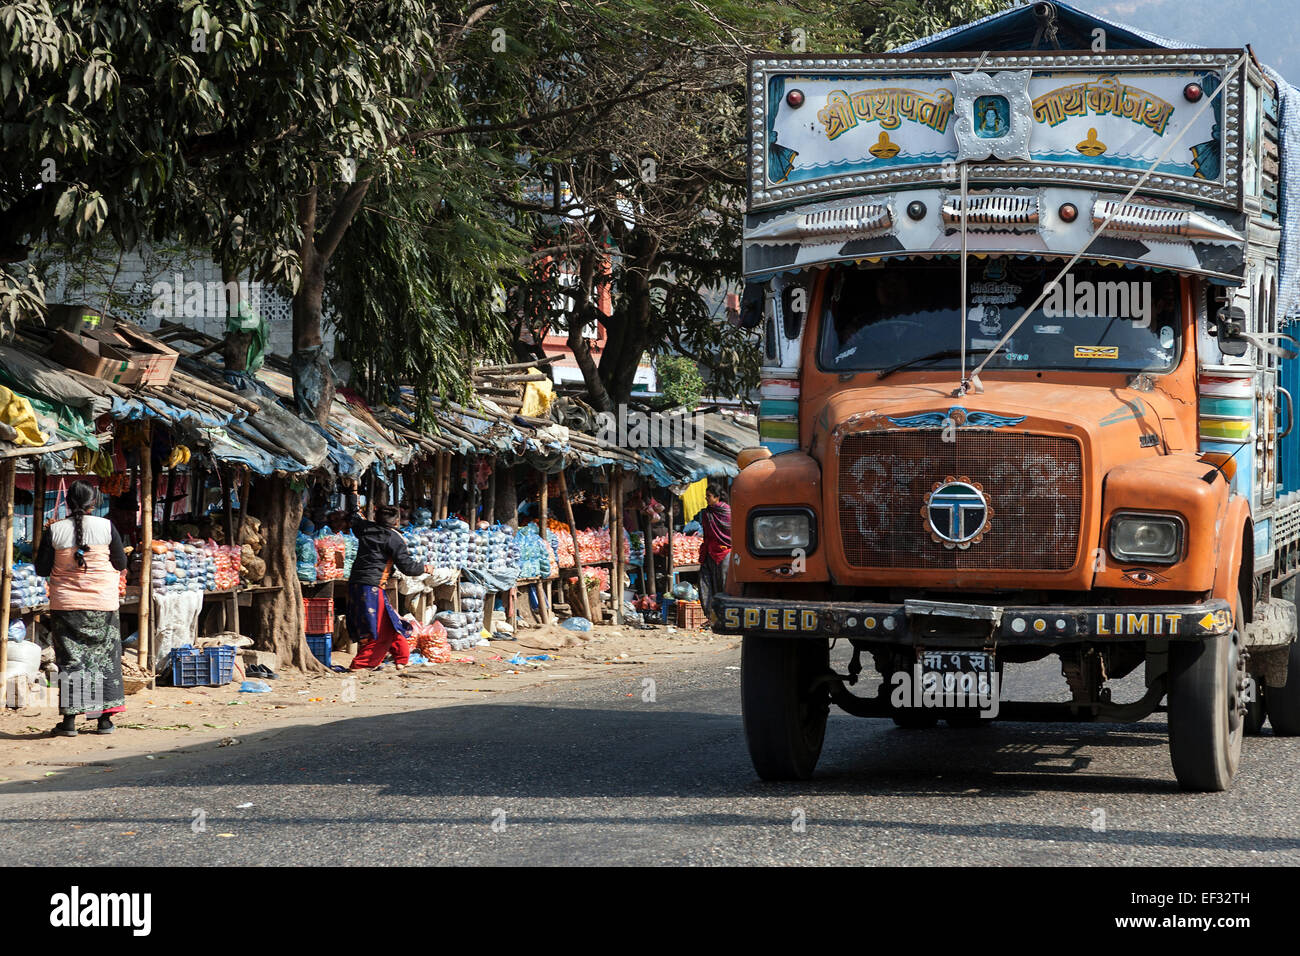 Street scene, Nepalese trucks and market stalls, left, Patauri, Nepal Stock Photo